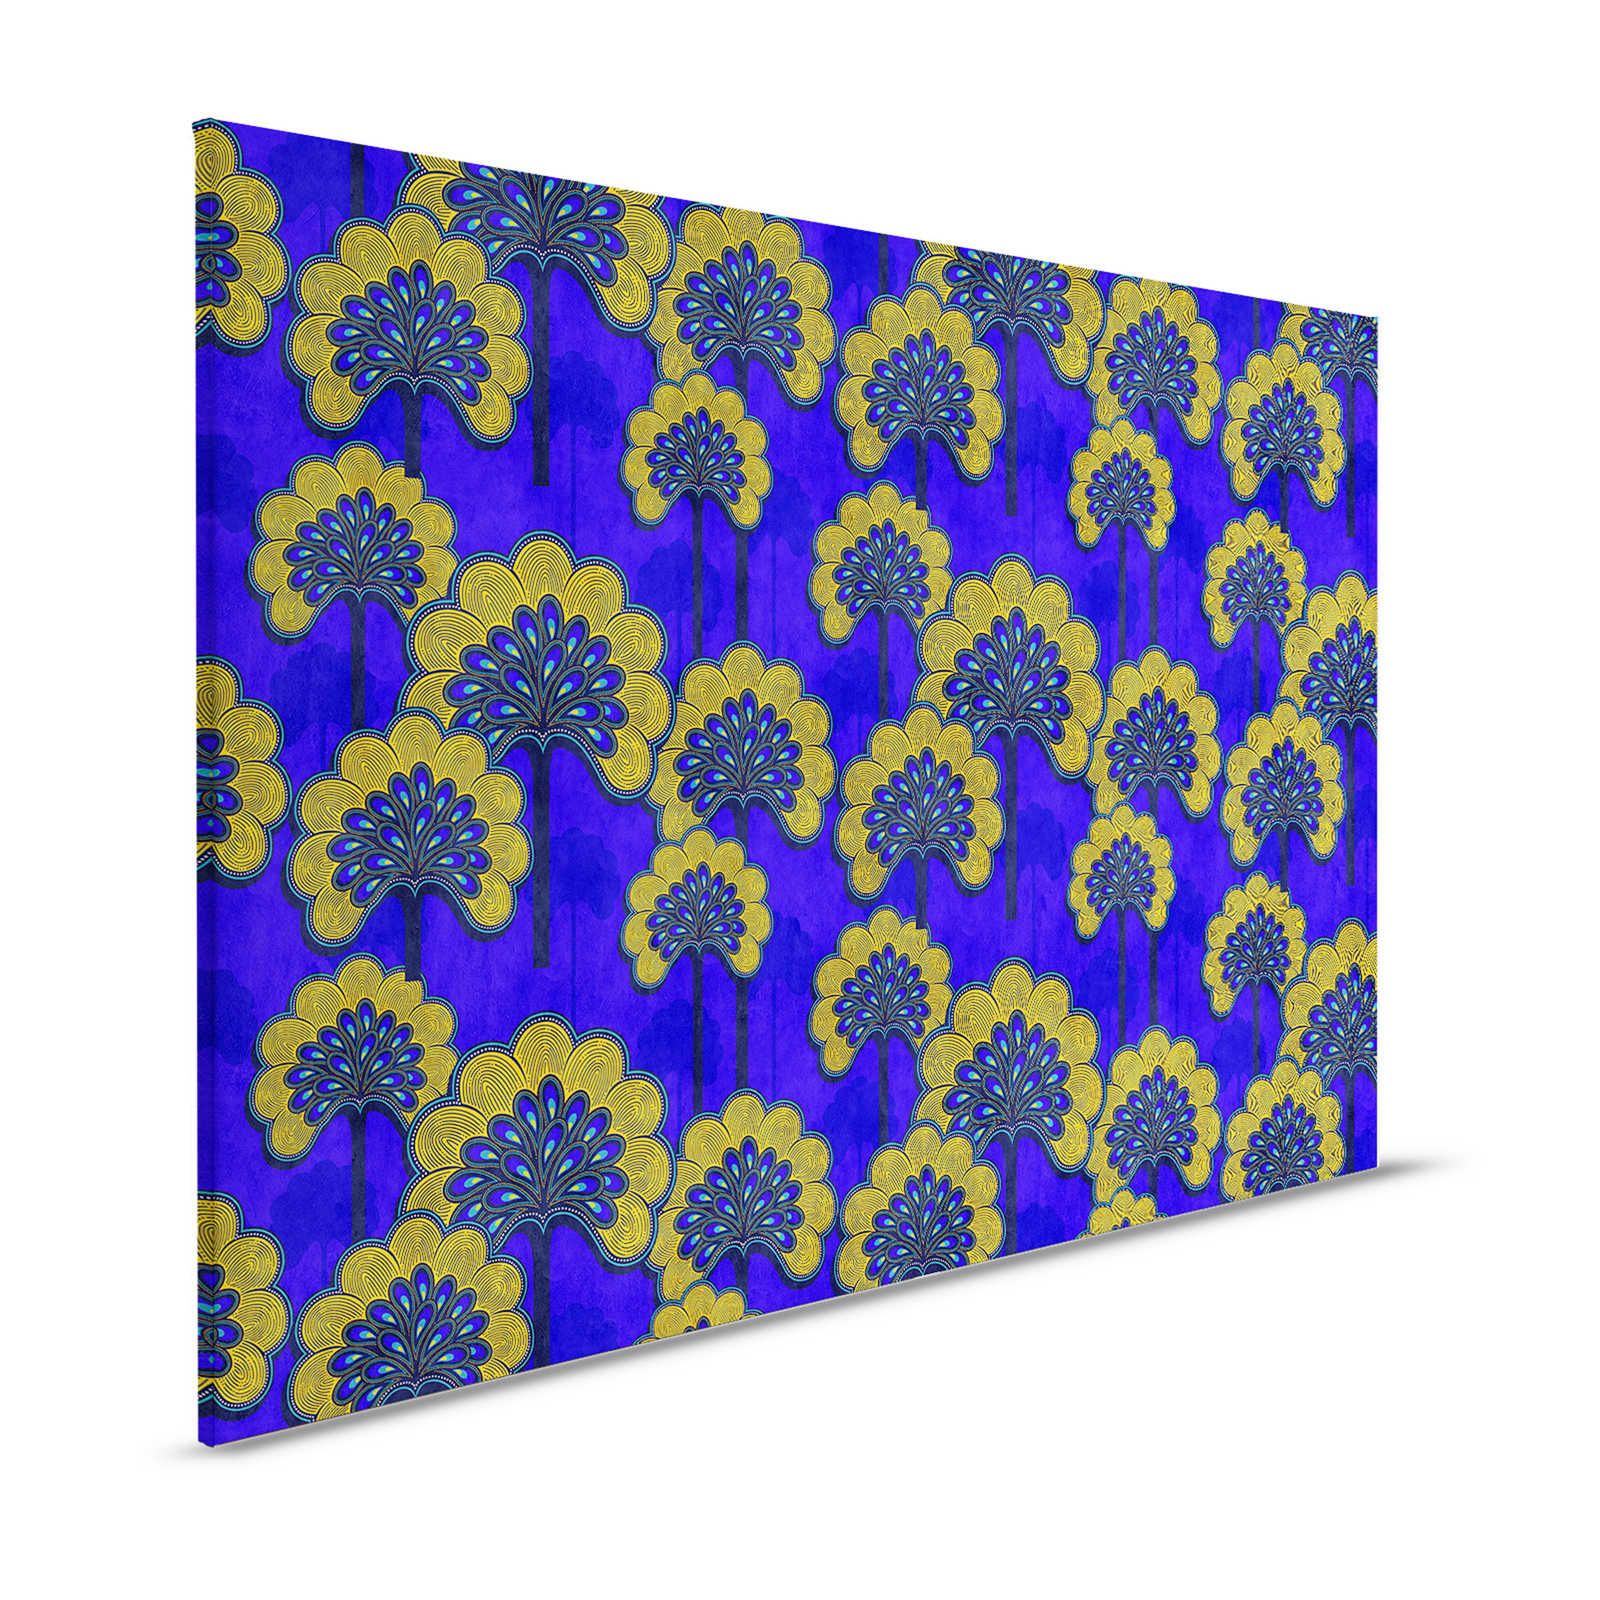 Dakar 1 - Toile motif tissu africain bleu & jaune - 1,20 m x 0,80 m
